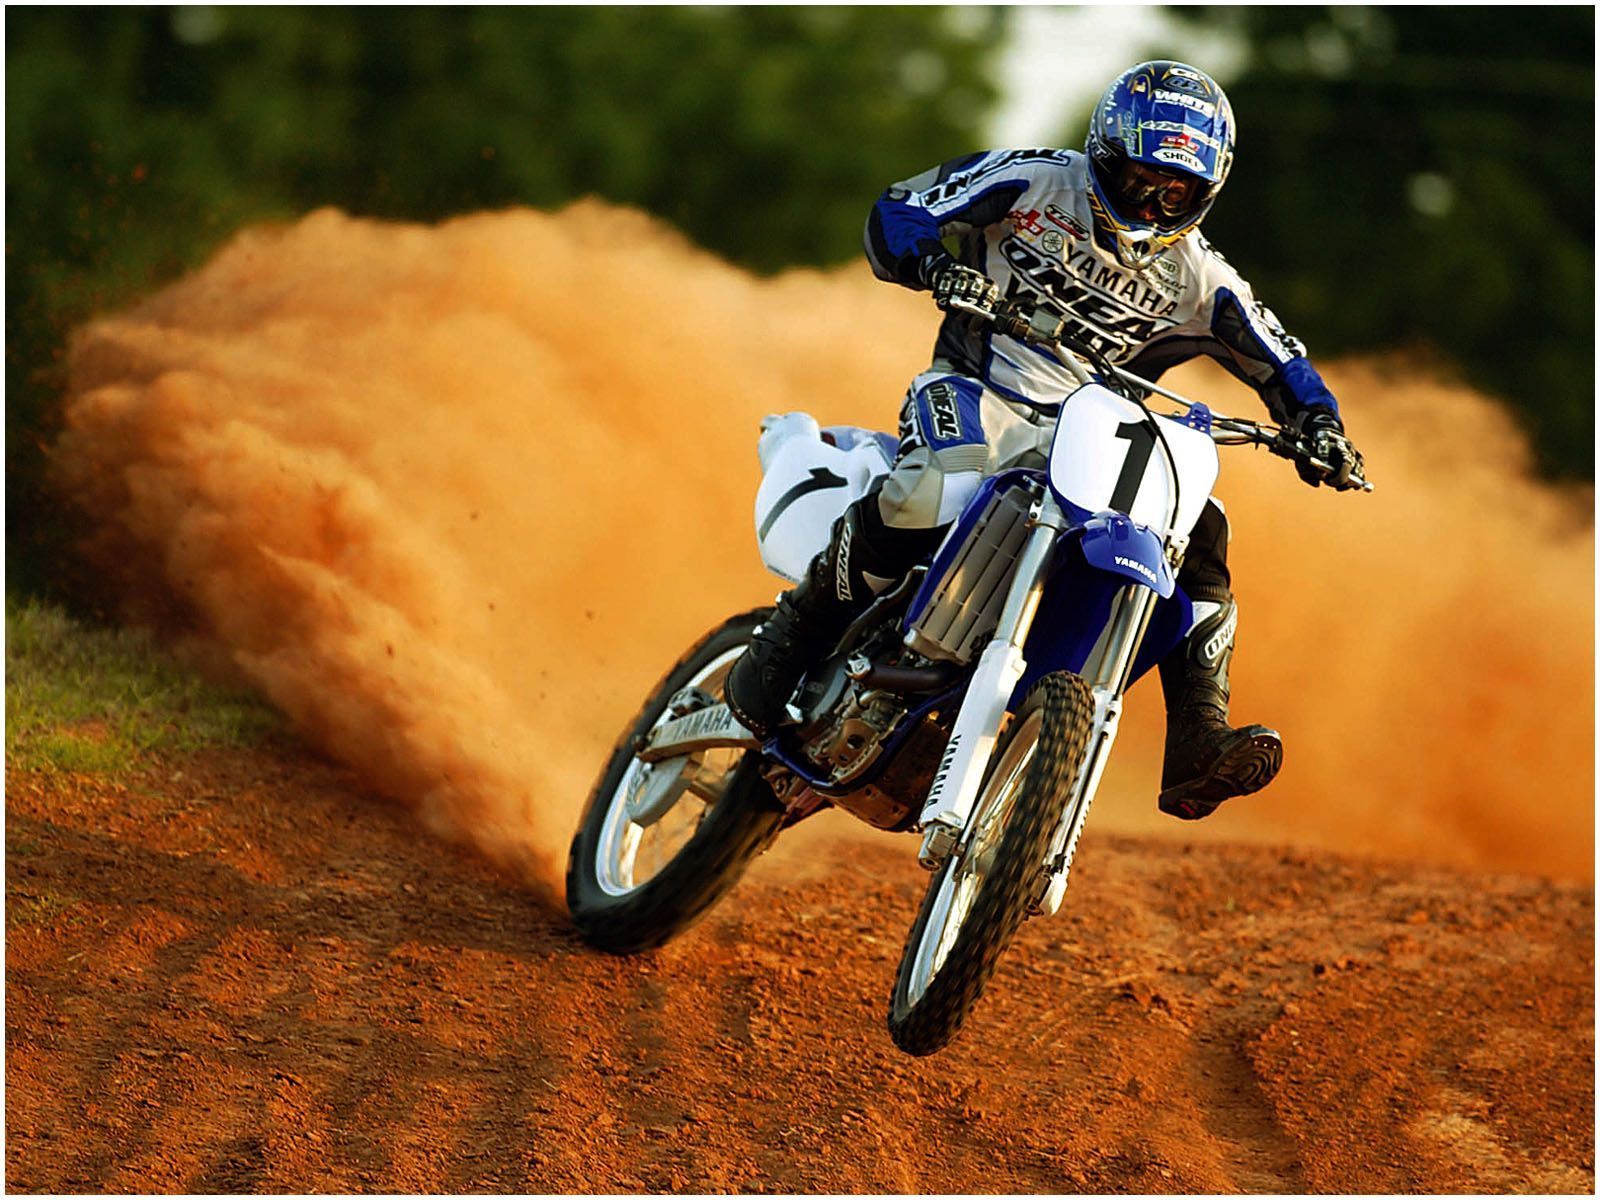 Yamaha Dirt Bikes Wallpapers - Wp7334702